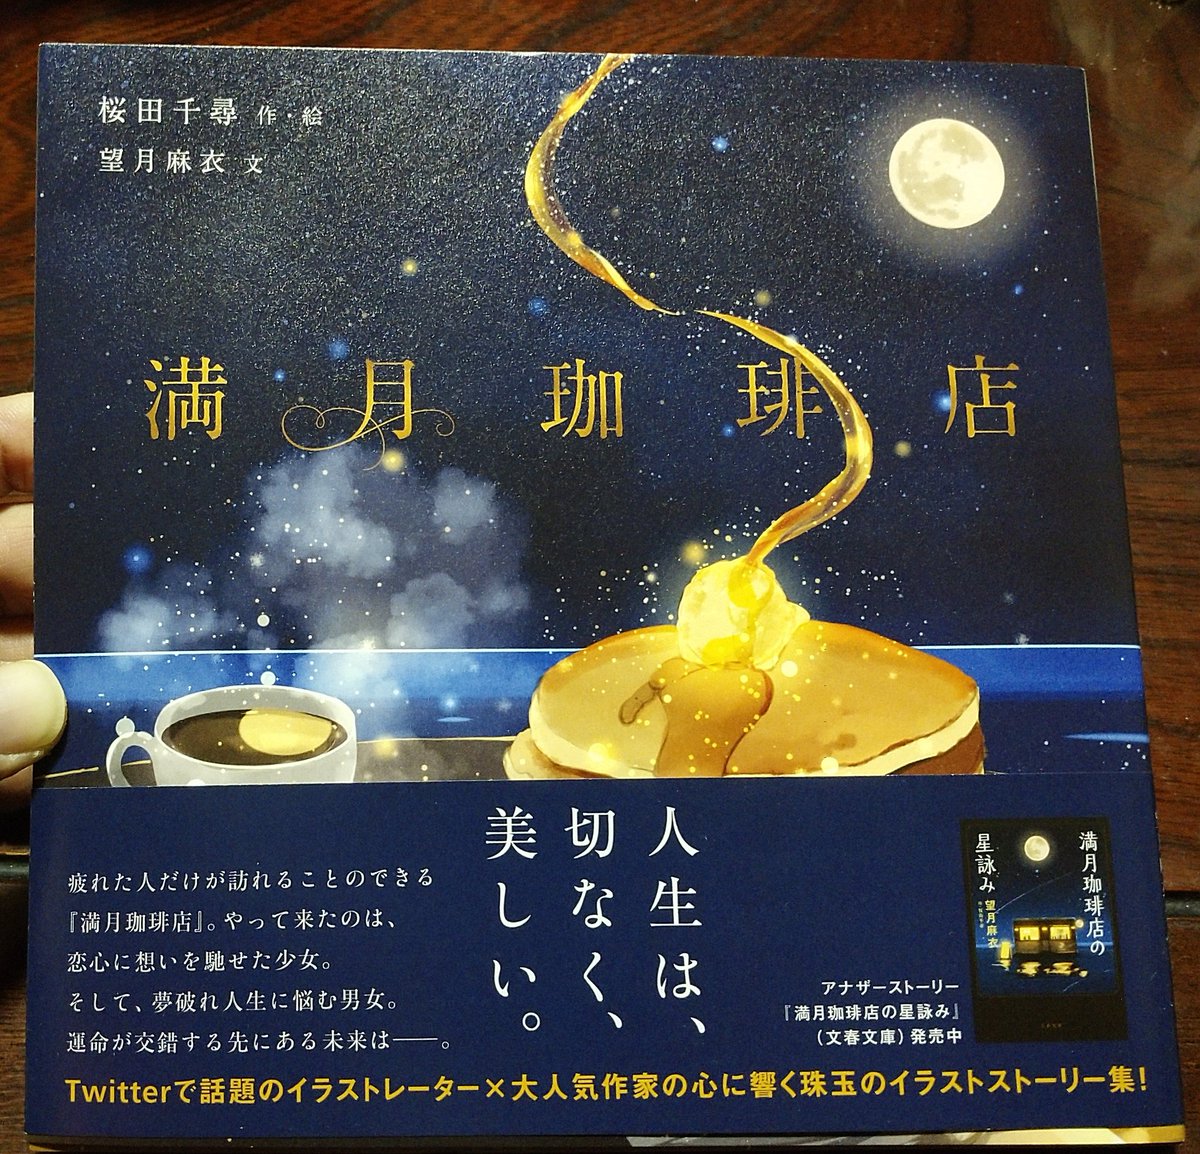 ことは 6 19 里ピク A Twitteren 掘りごたつで読書をしよう と 先日買った 桜田千尋さん Chihirosakuradaの絵の絵本を読んでいました 素敵なイラストで Twitterで見ていて 好きだったのです こんな喫茶店があったらな と思えるきれいでおしゃれなイラストと